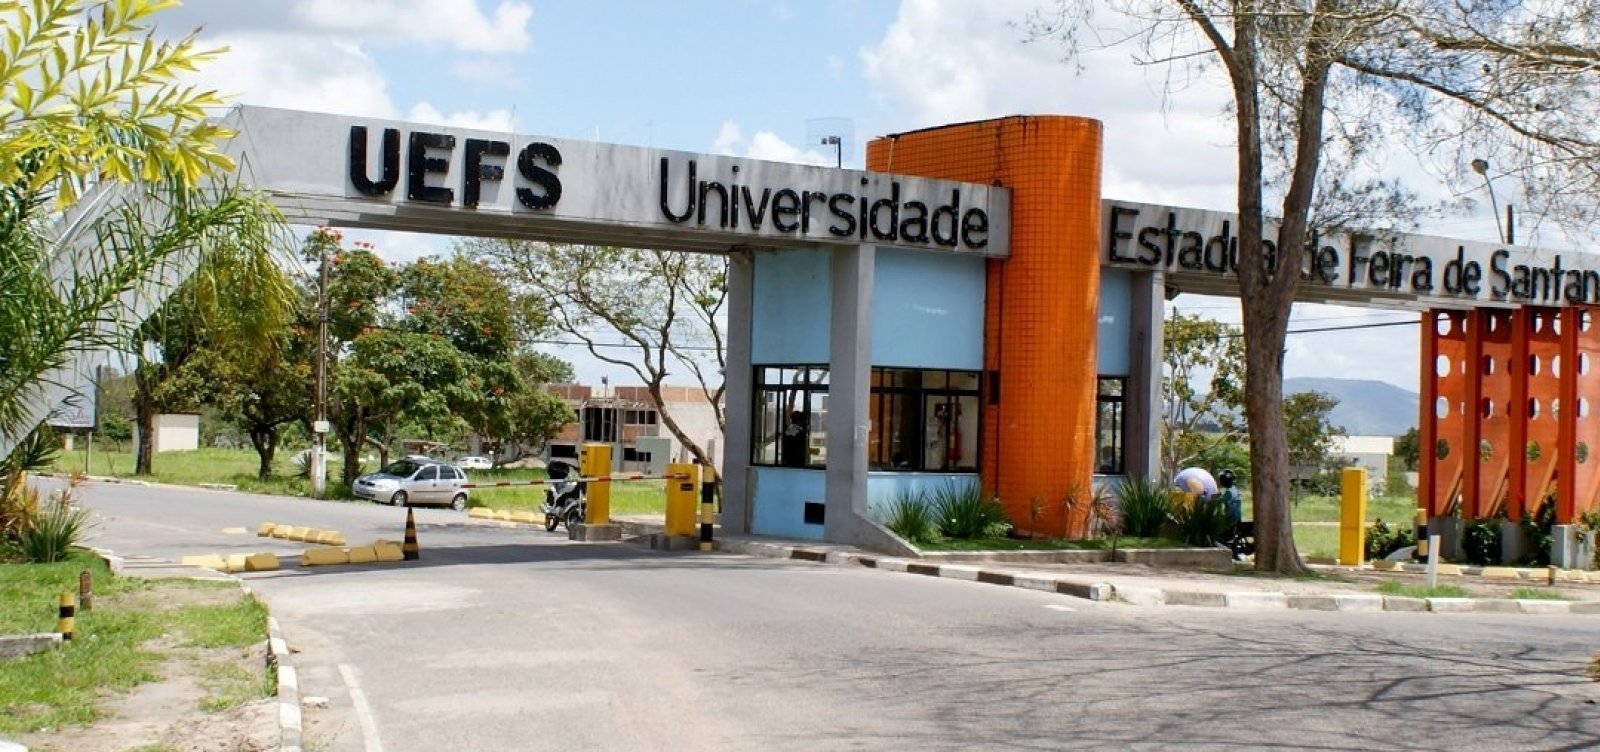 Uefs abre inscrições do processo seletivo de transferência interna e externa para ingressos nos cursos de graduação